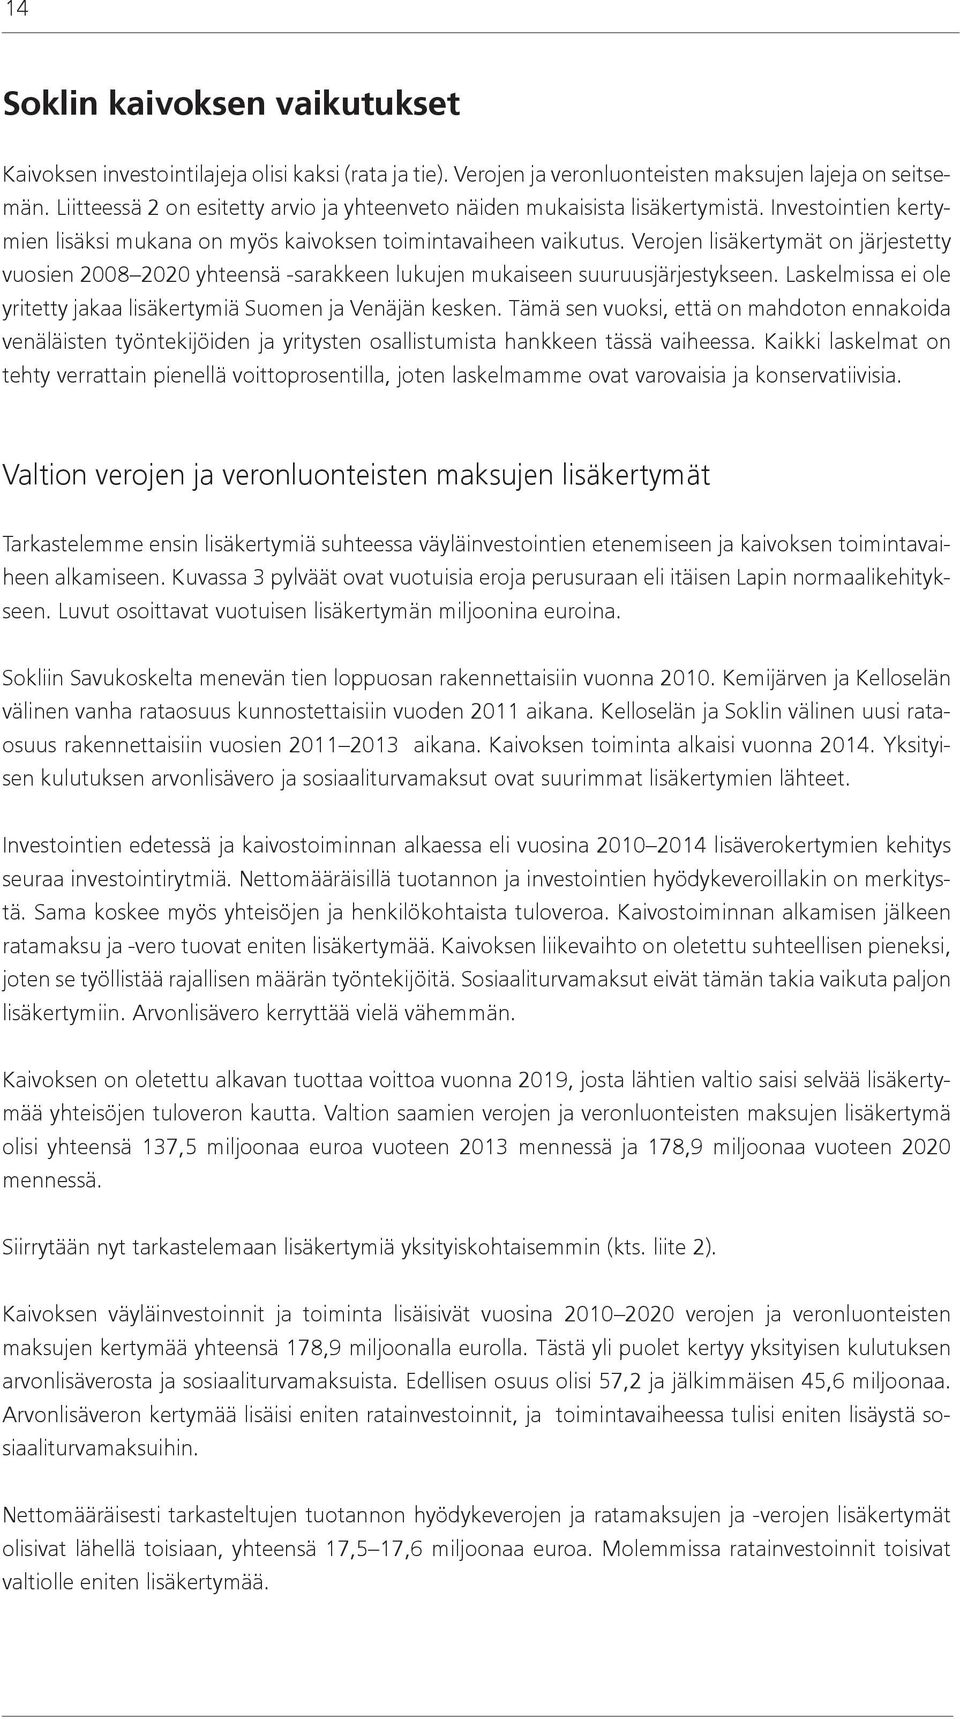 Verojen lisäkertymät on järjestetty vuosien 2008 2020 yhteensä -sarakkeen lukujen mukaiseen suuruusjärjestykseen. Laskelmissa ei ole yritetty jakaa lisäkertymiä Suomen ja Venäjän kesken.